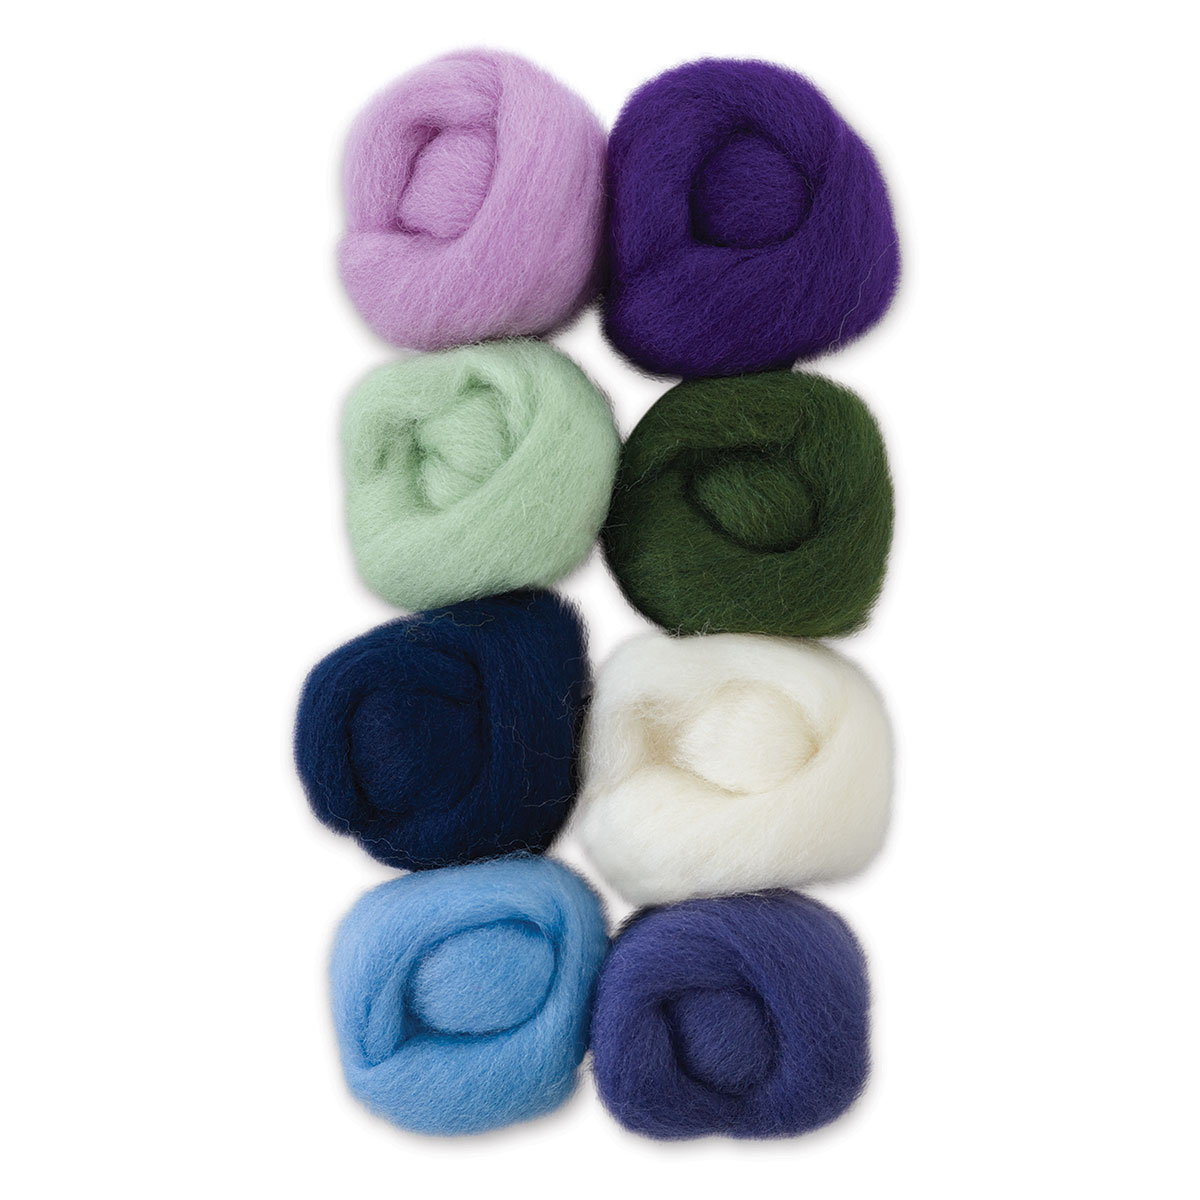 Shaded Wisps Roving Wool Kit for Needle Felting